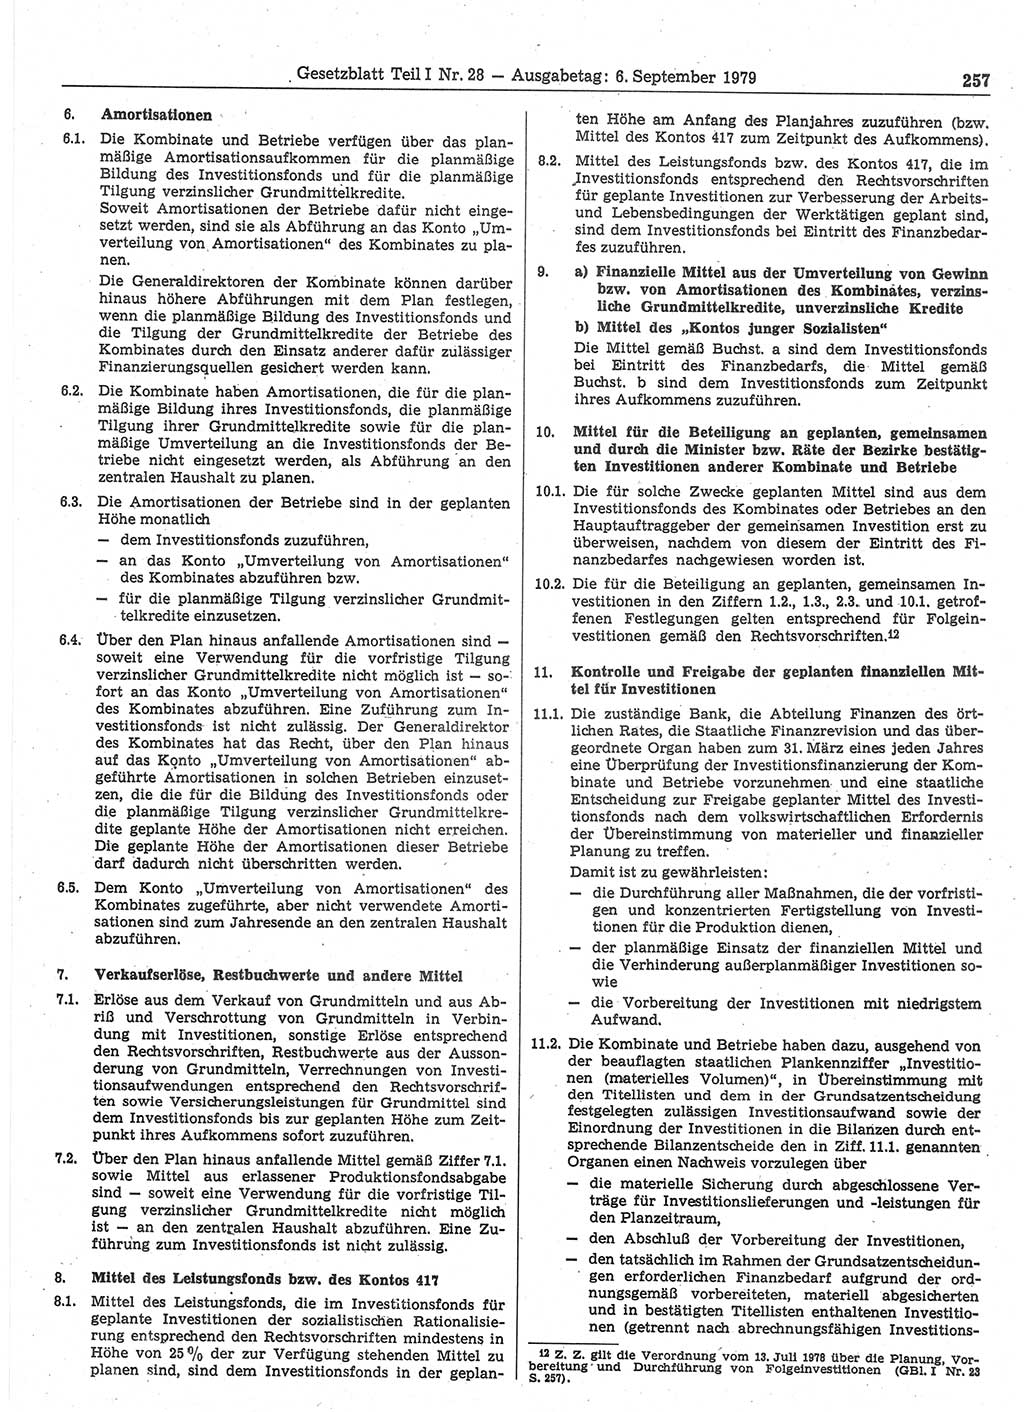 Gesetzblatt (GBl.) der Deutschen Demokratischen Republik (DDR) Teil Ⅰ 1979, Seite 257 (GBl. DDR Ⅰ 1979, S. 257)